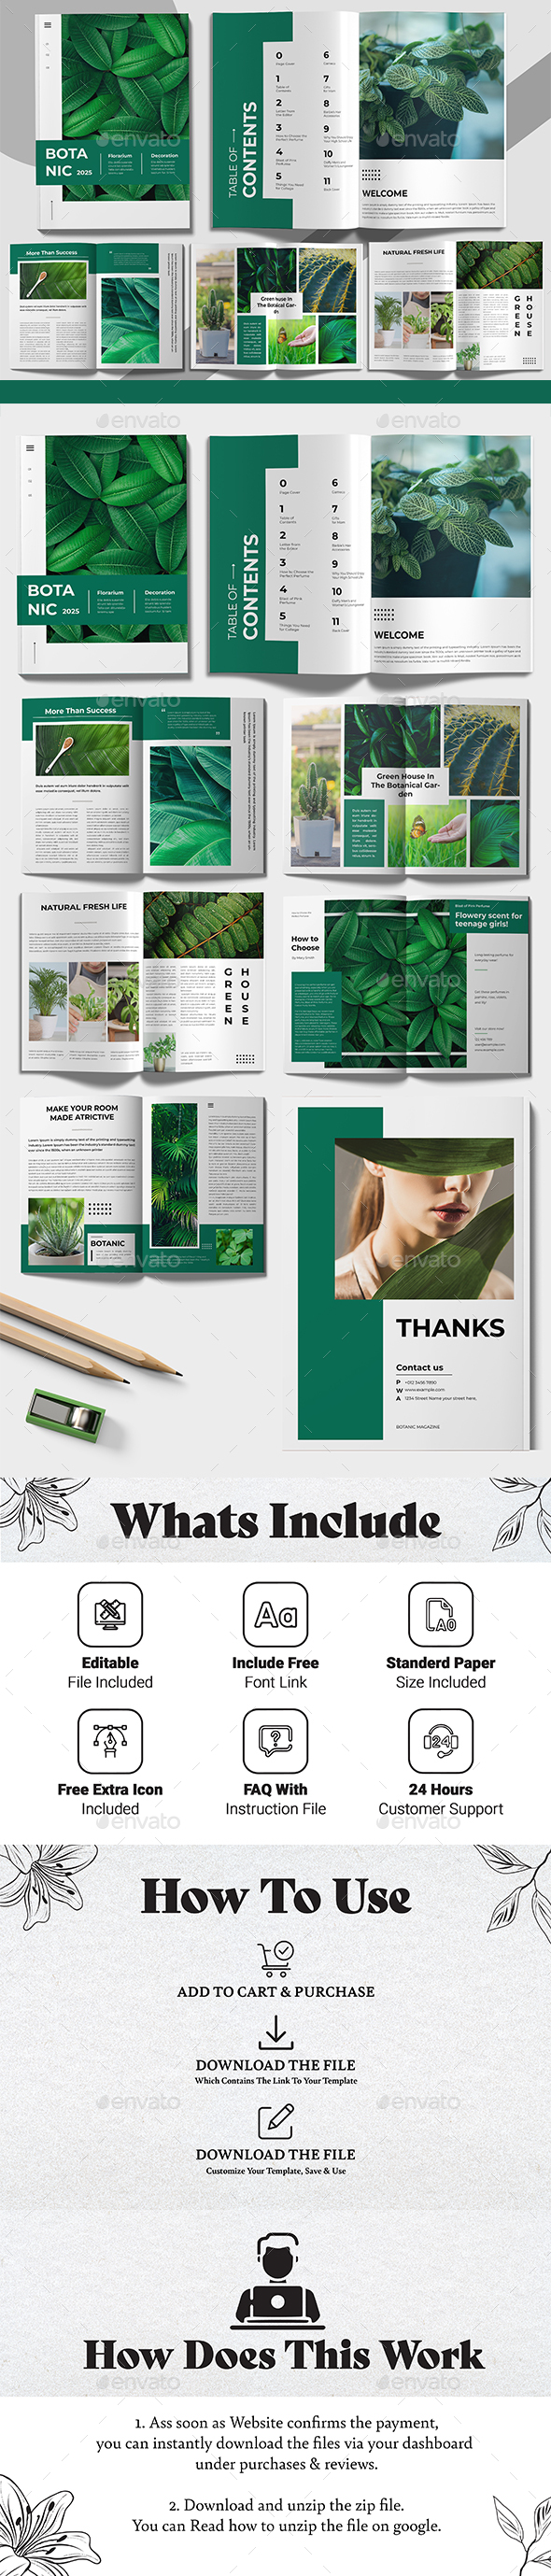 Botanic Magazine Design Layout